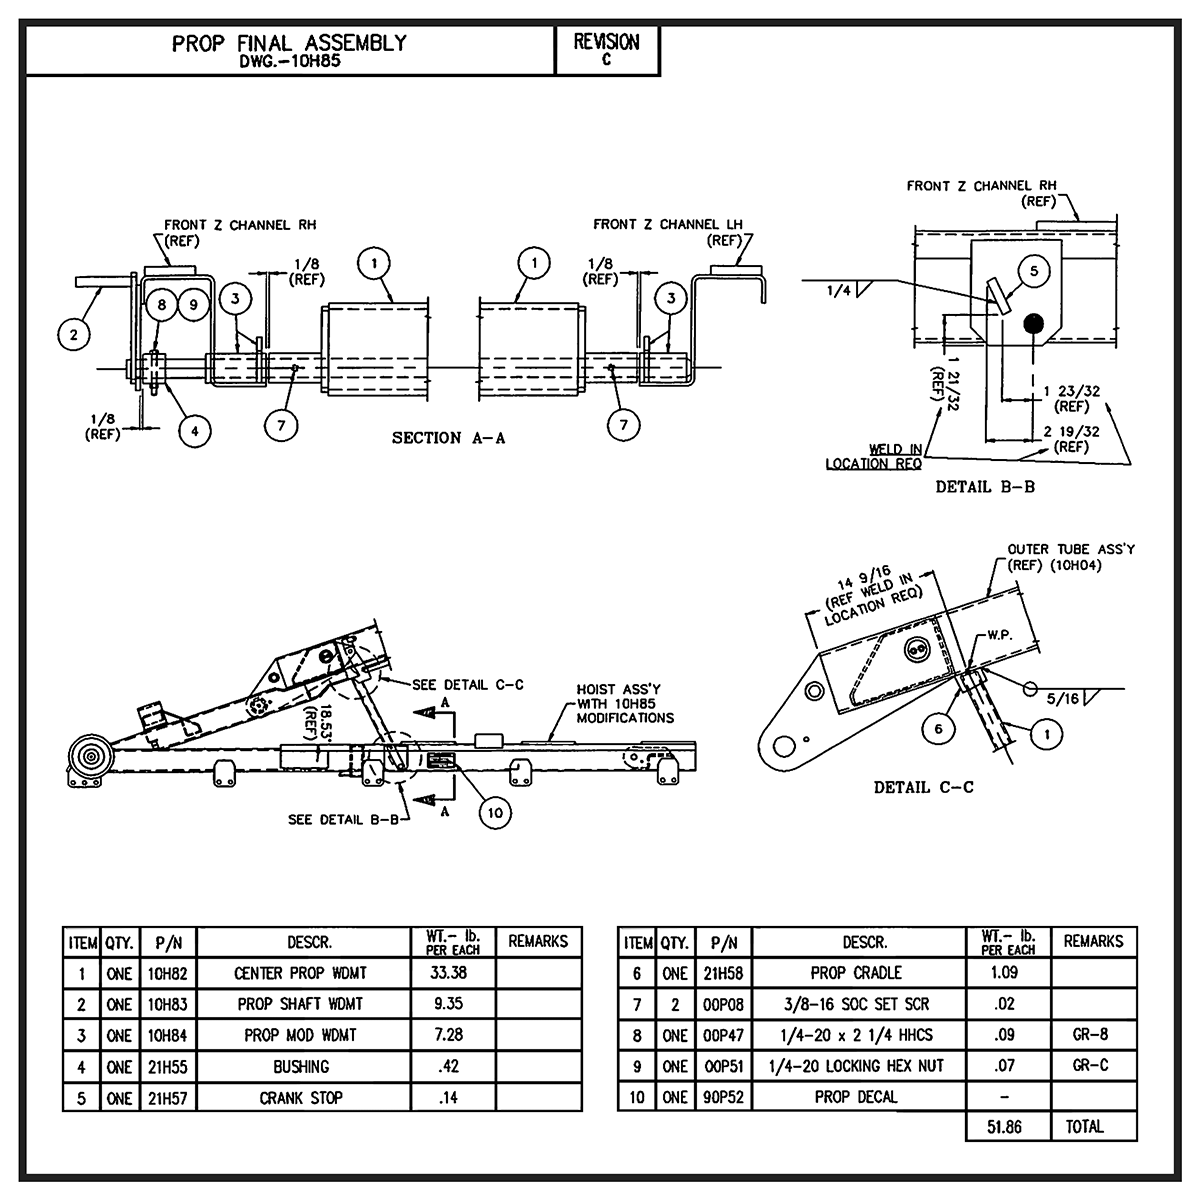 Swaploader SL-125 Prop Final Assembly Diagram